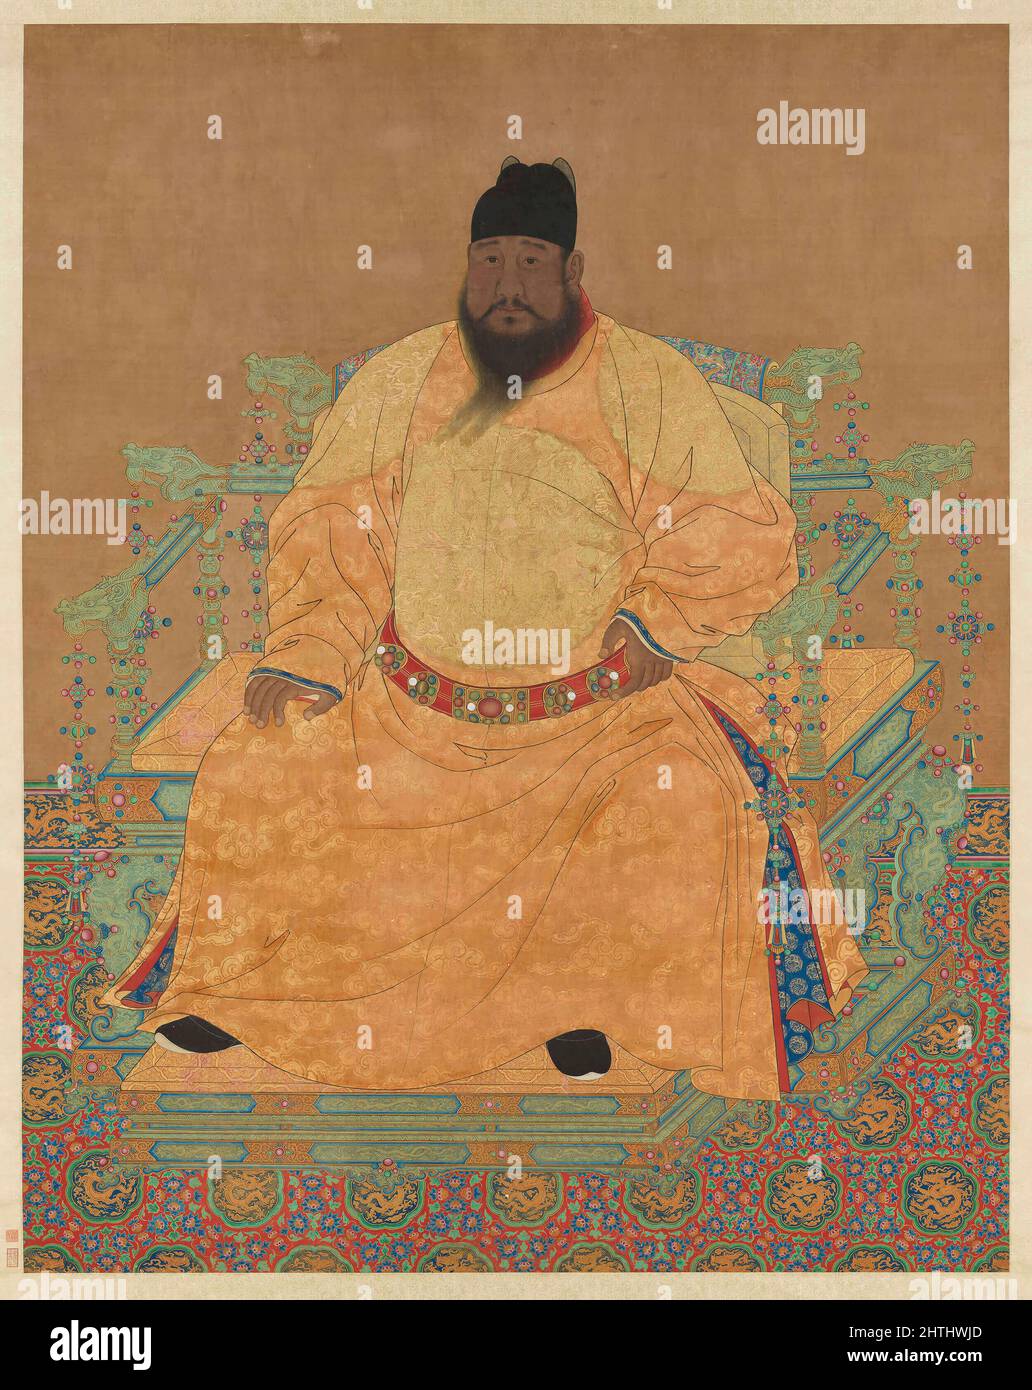 Portrait de l'empereur Xuande (1399 - 1435), cinquième empereur de la dynastie Ming, régna de 1425 à 1435 Banque D'Images